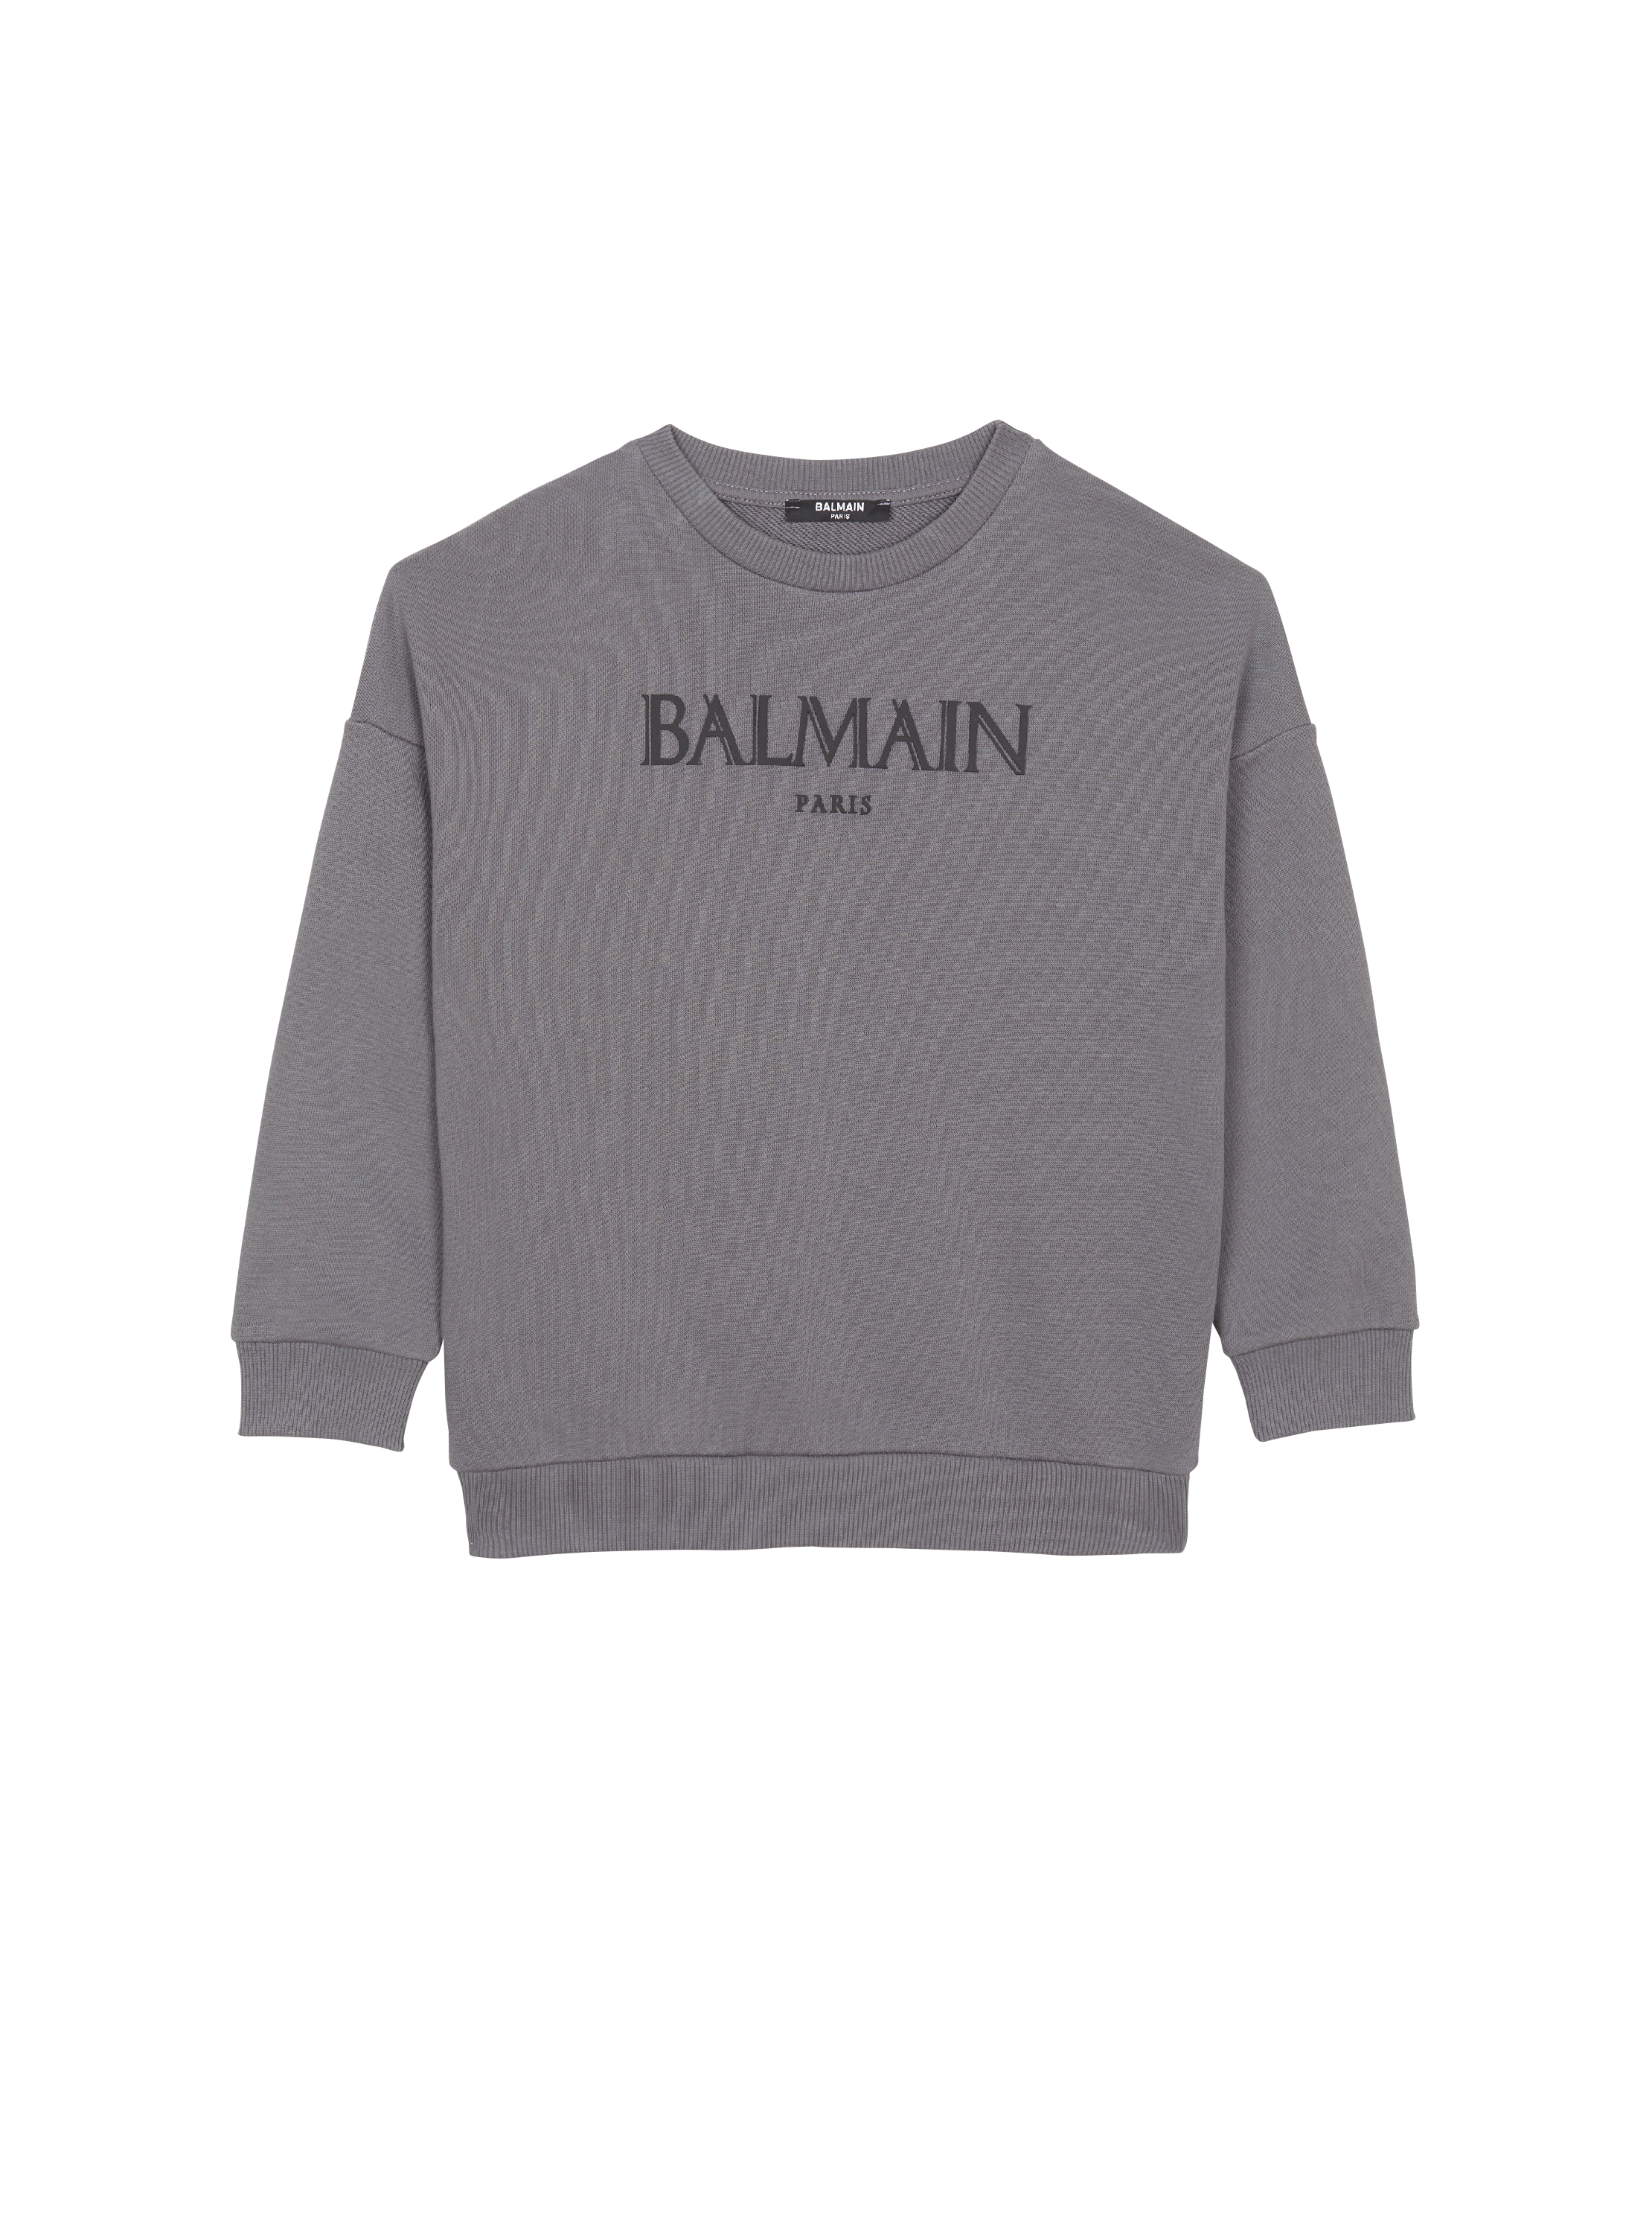 Balmain Romain 스웨트셔츠